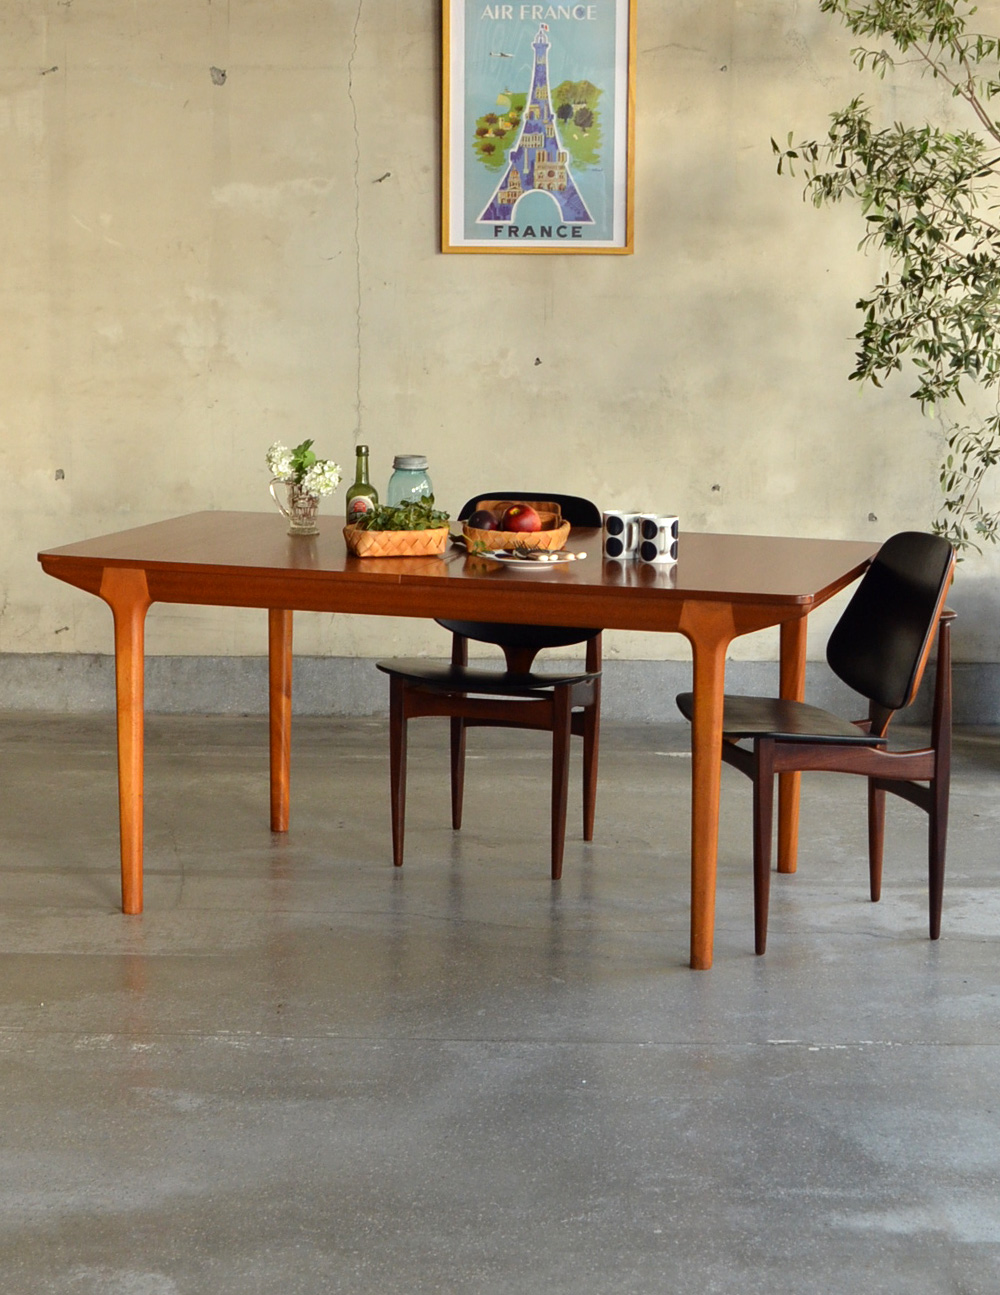 マッキントッシュ社のヴィンテージ家具、伸張式のダイニングテーブル (x-559-f)